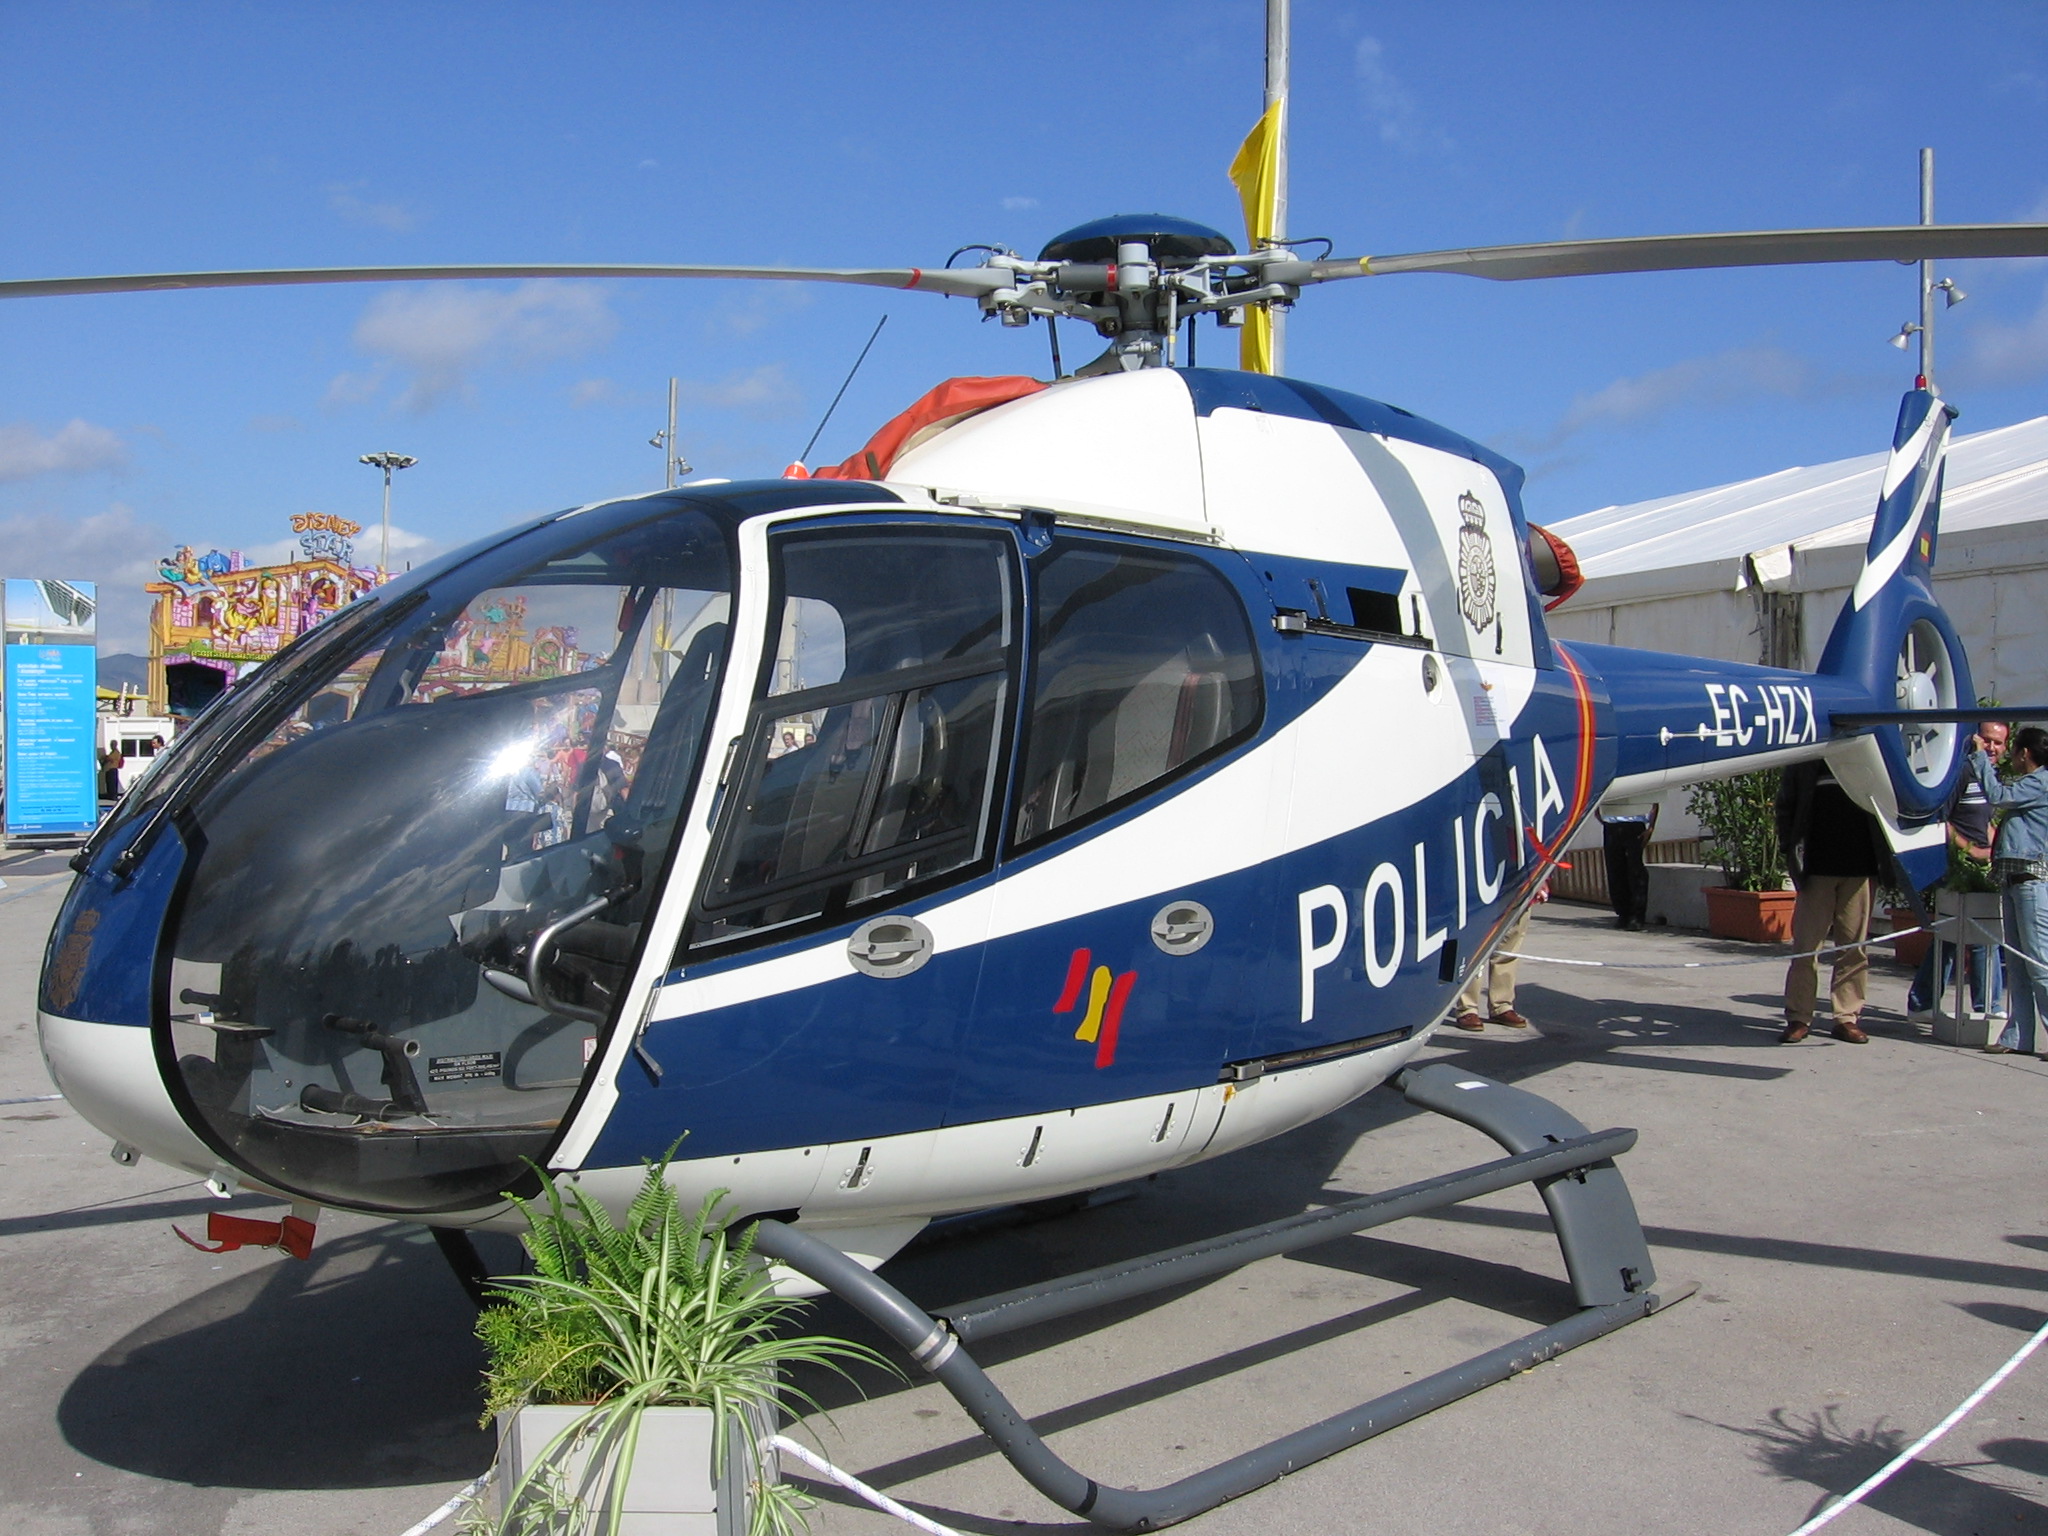 Eurocopter Colibri Policia Nacional